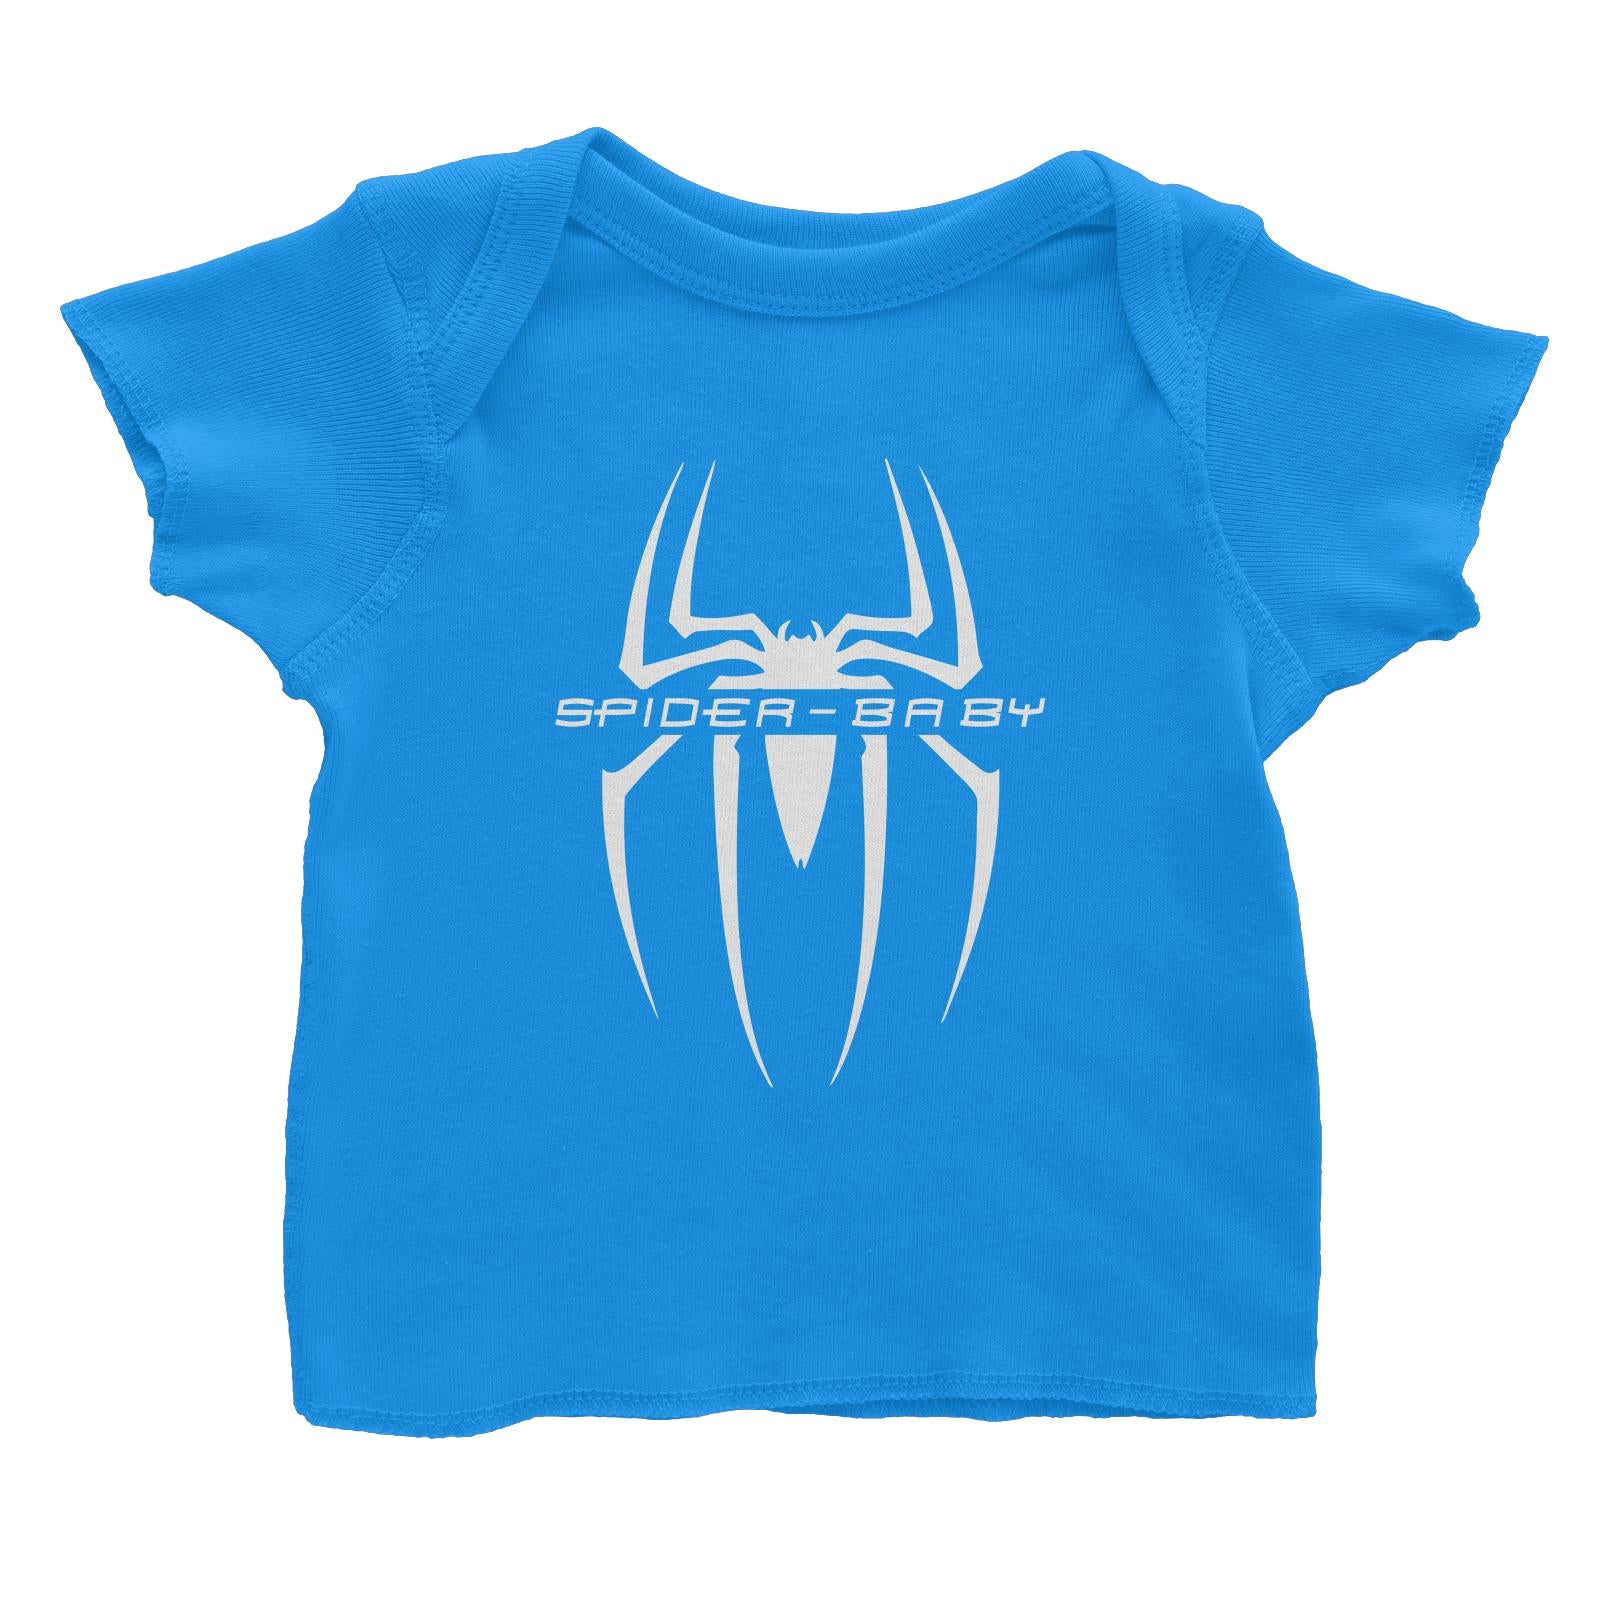 Superhero Spider Baby Baby T-Shirt  Matching Family